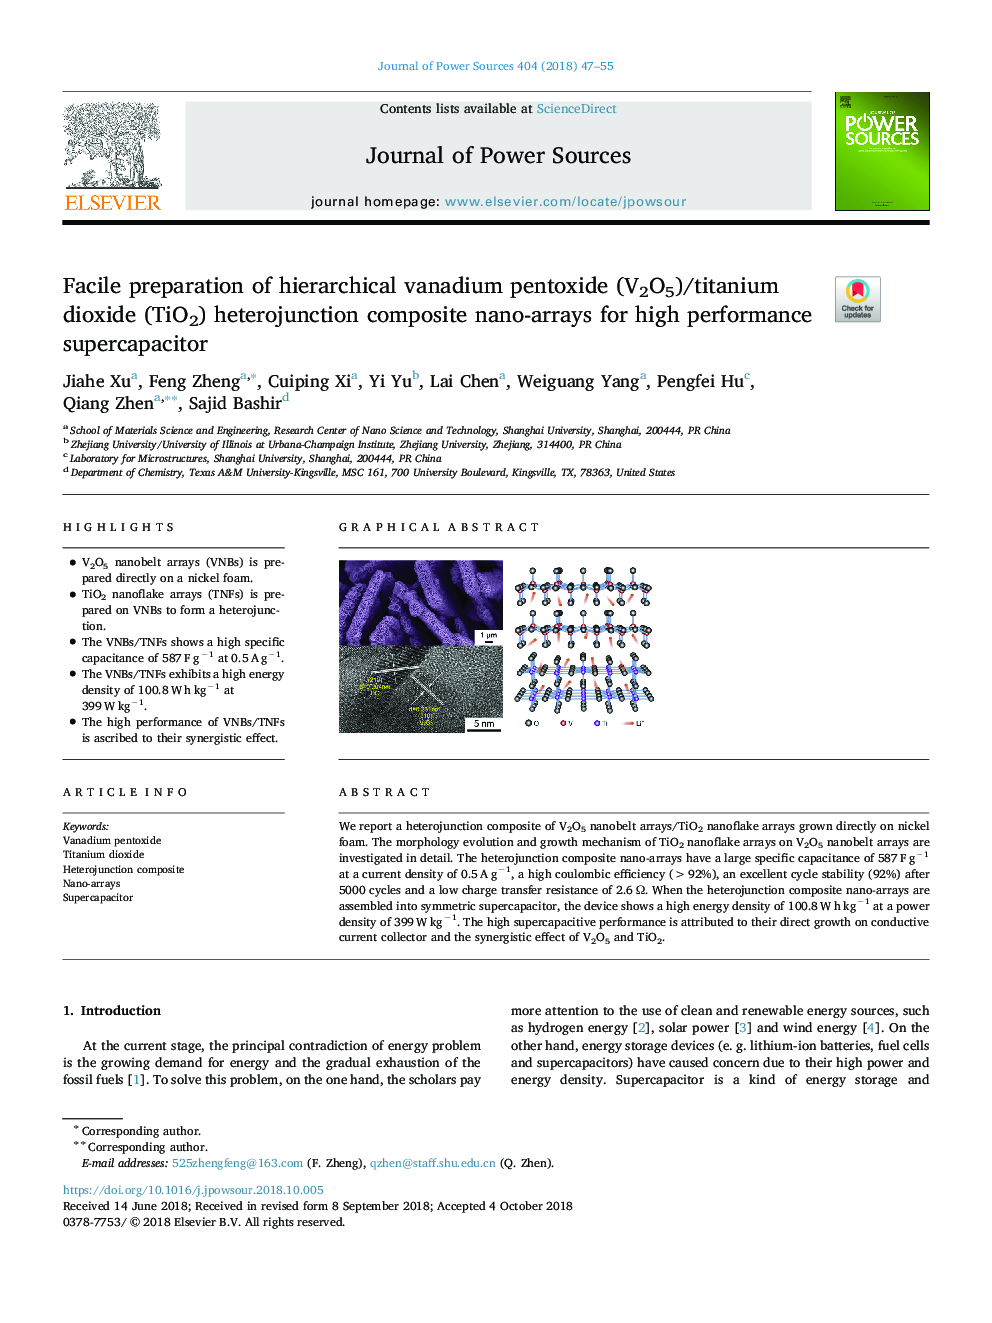 Facile preparation of hierarchical vanadium pentoxide (V2O5)/titanium dioxide (TiO2) heterojunction composite nano-arrays for high performance supercapacitor